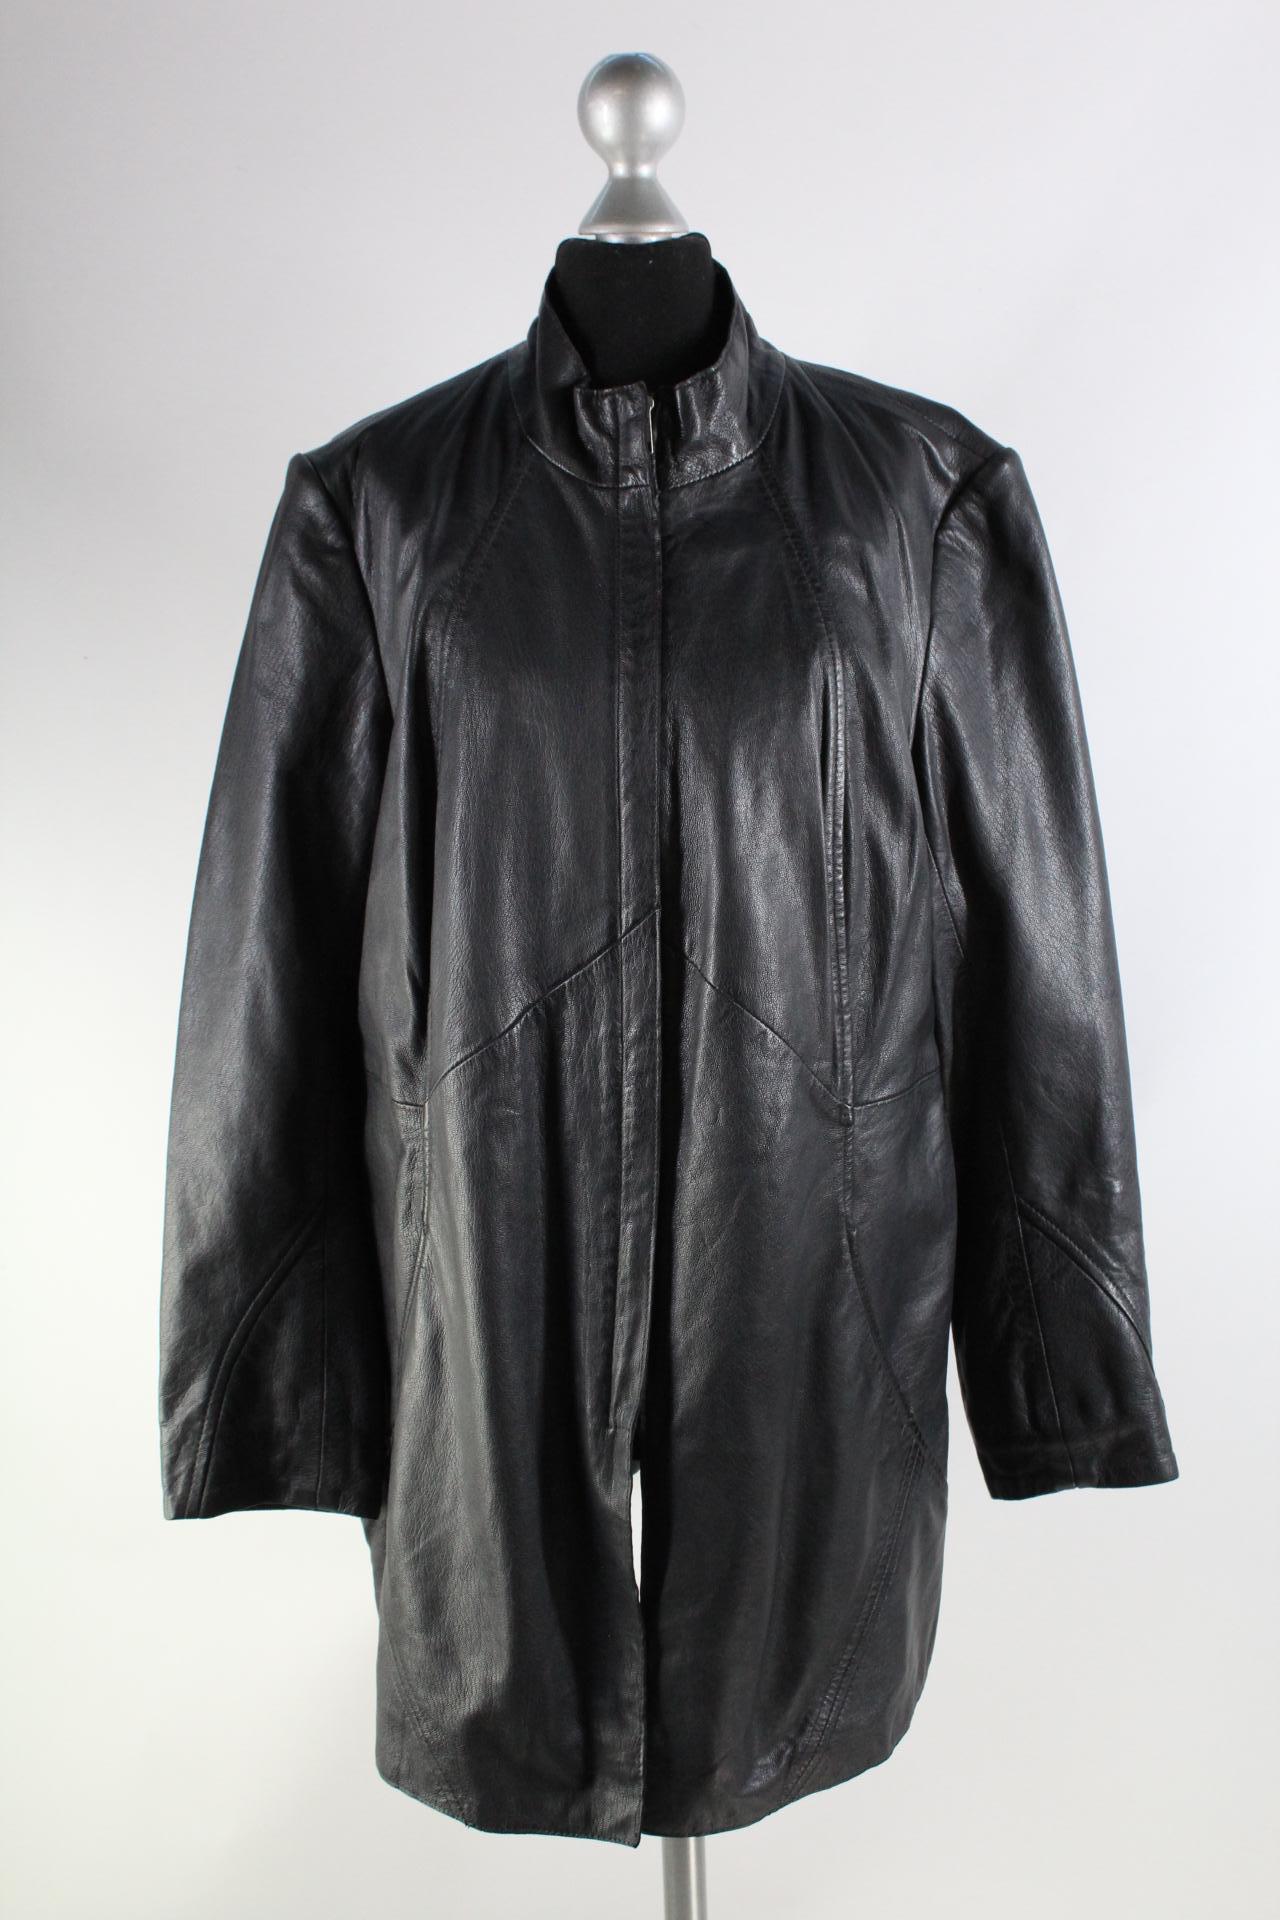 Mainpol Damen-Lederjacke schwarz Größe 42